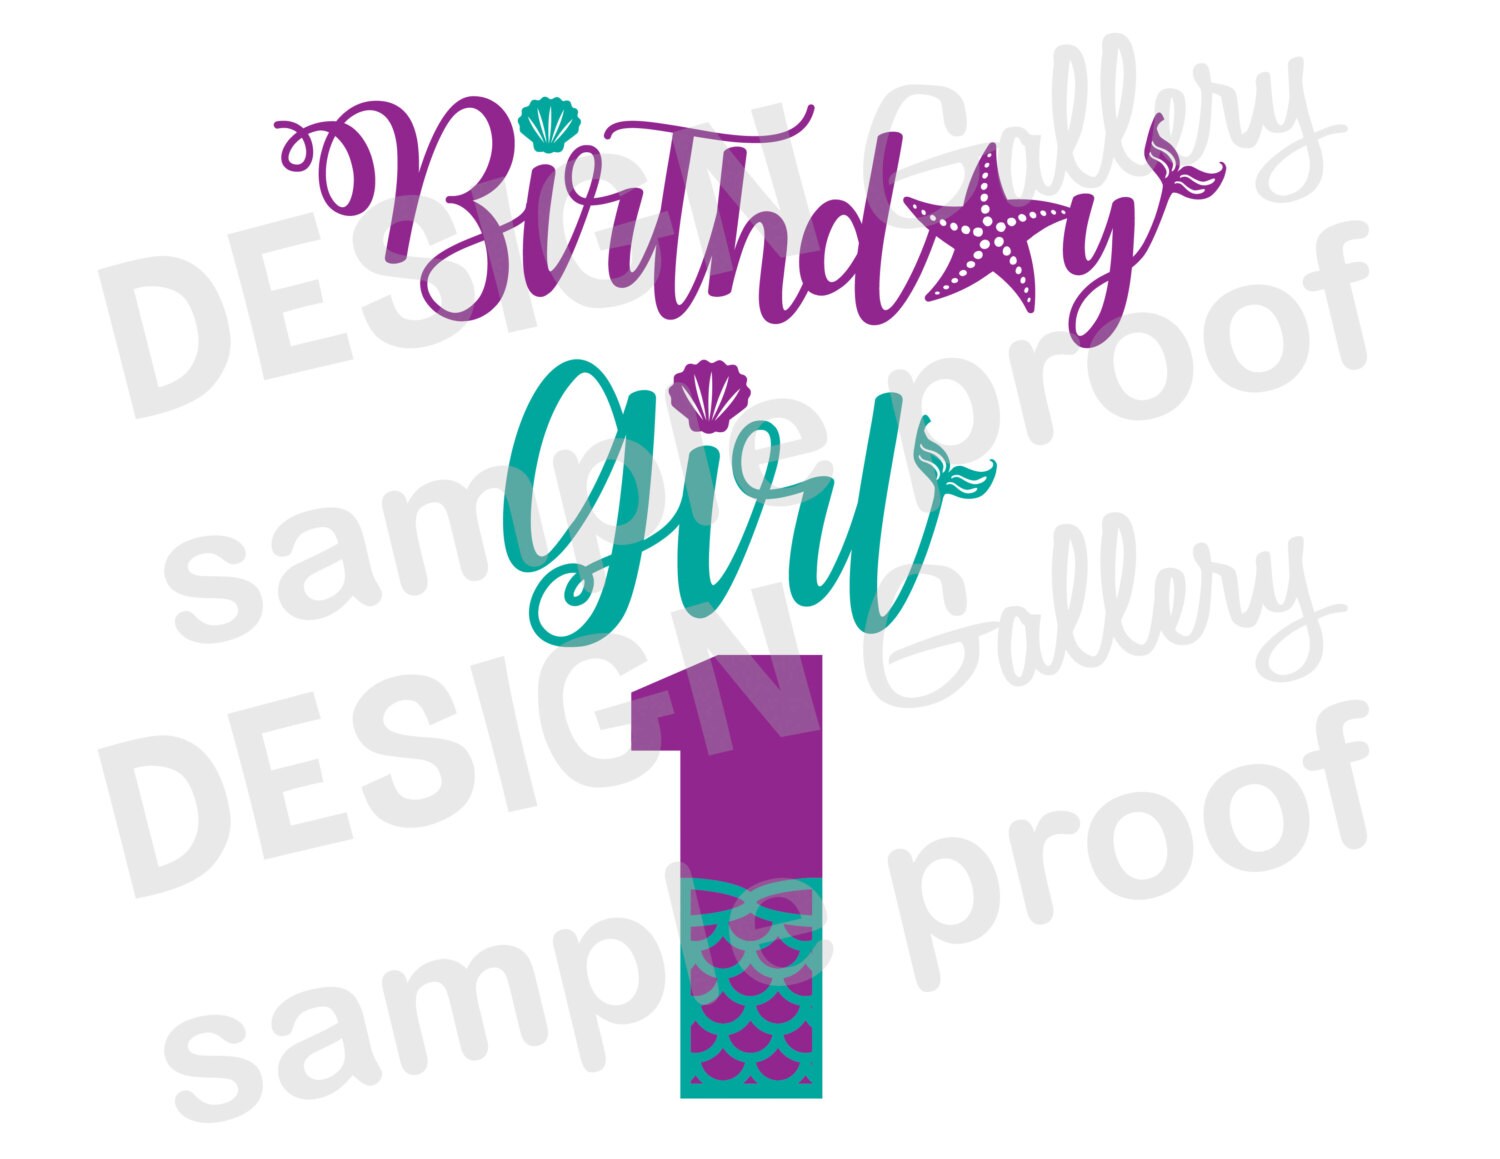 Birthday Girl 1 one Mermaid style image JPG png & SVG